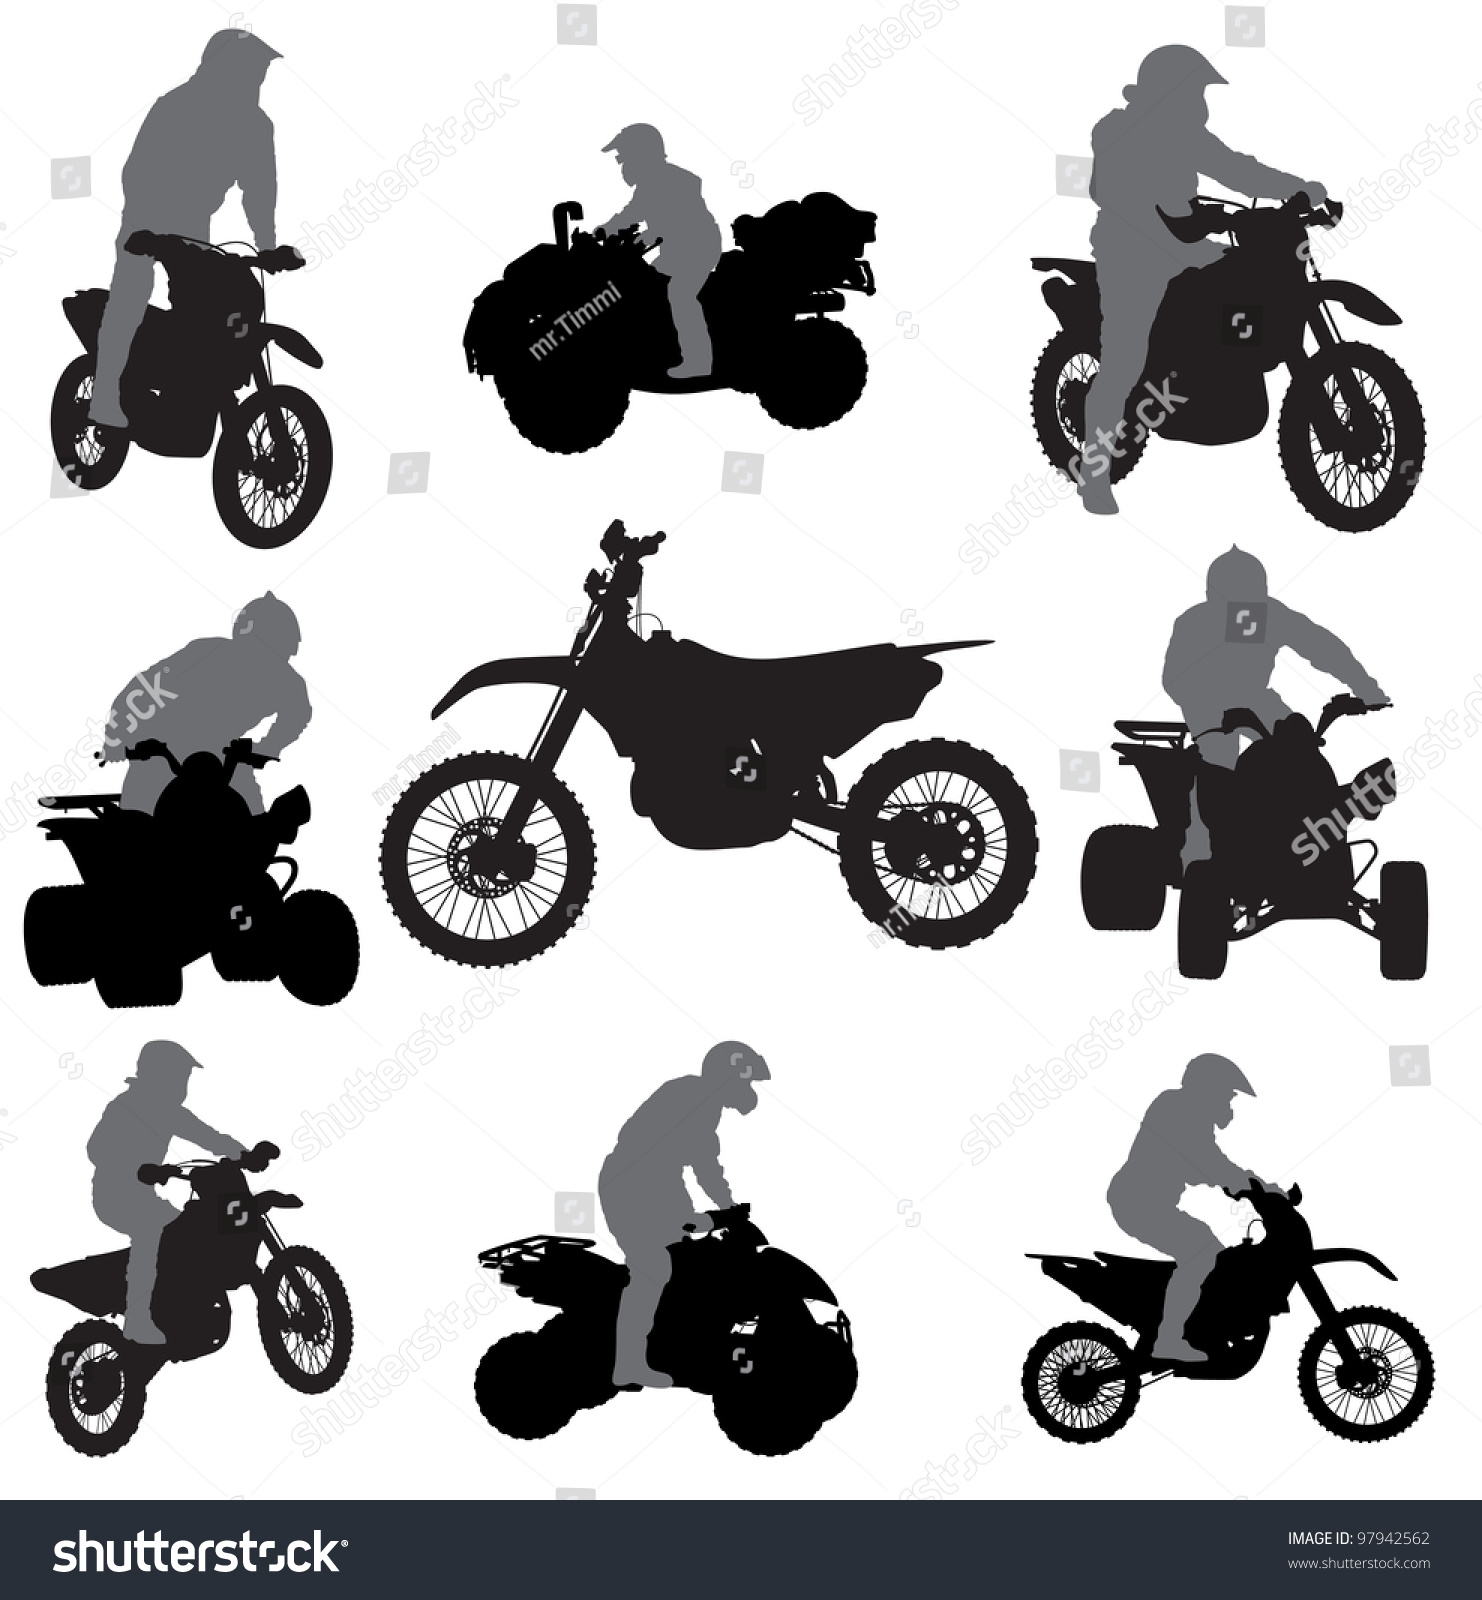 Картинка попробуй угадать что за мотоцикл по силуэту